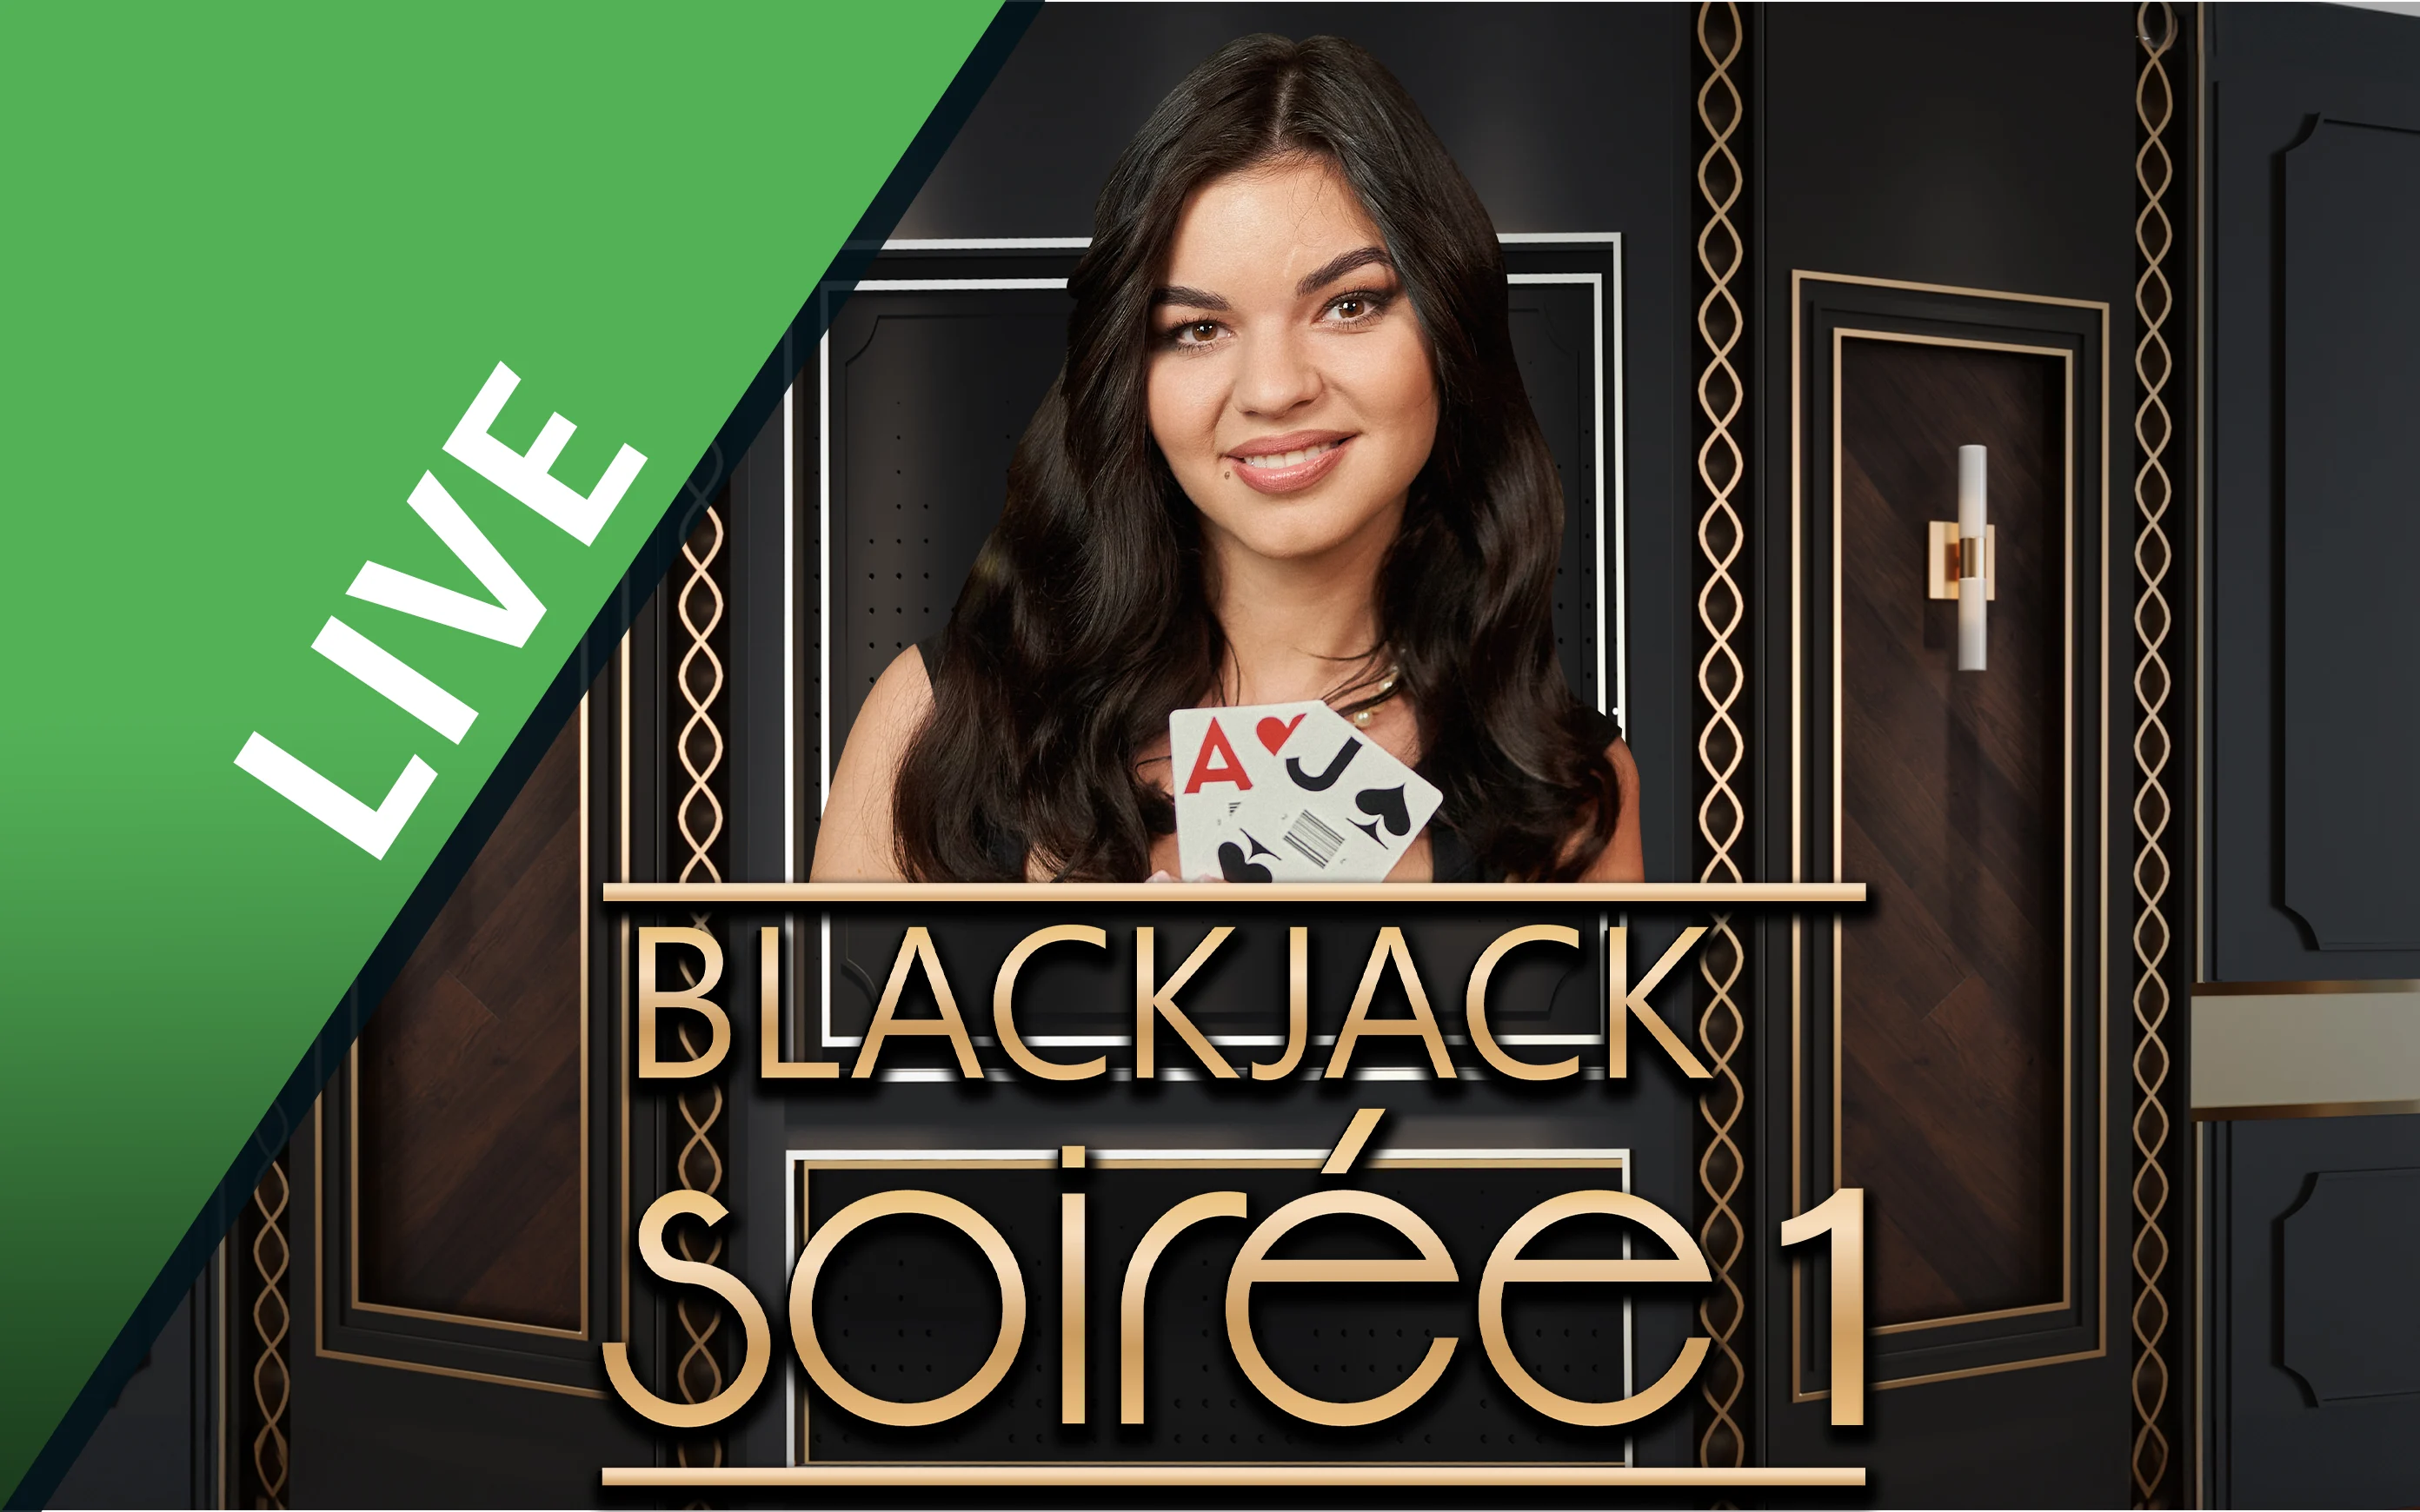 Spil Blackjack Soirée 1 på Starcasino.be online kasino
